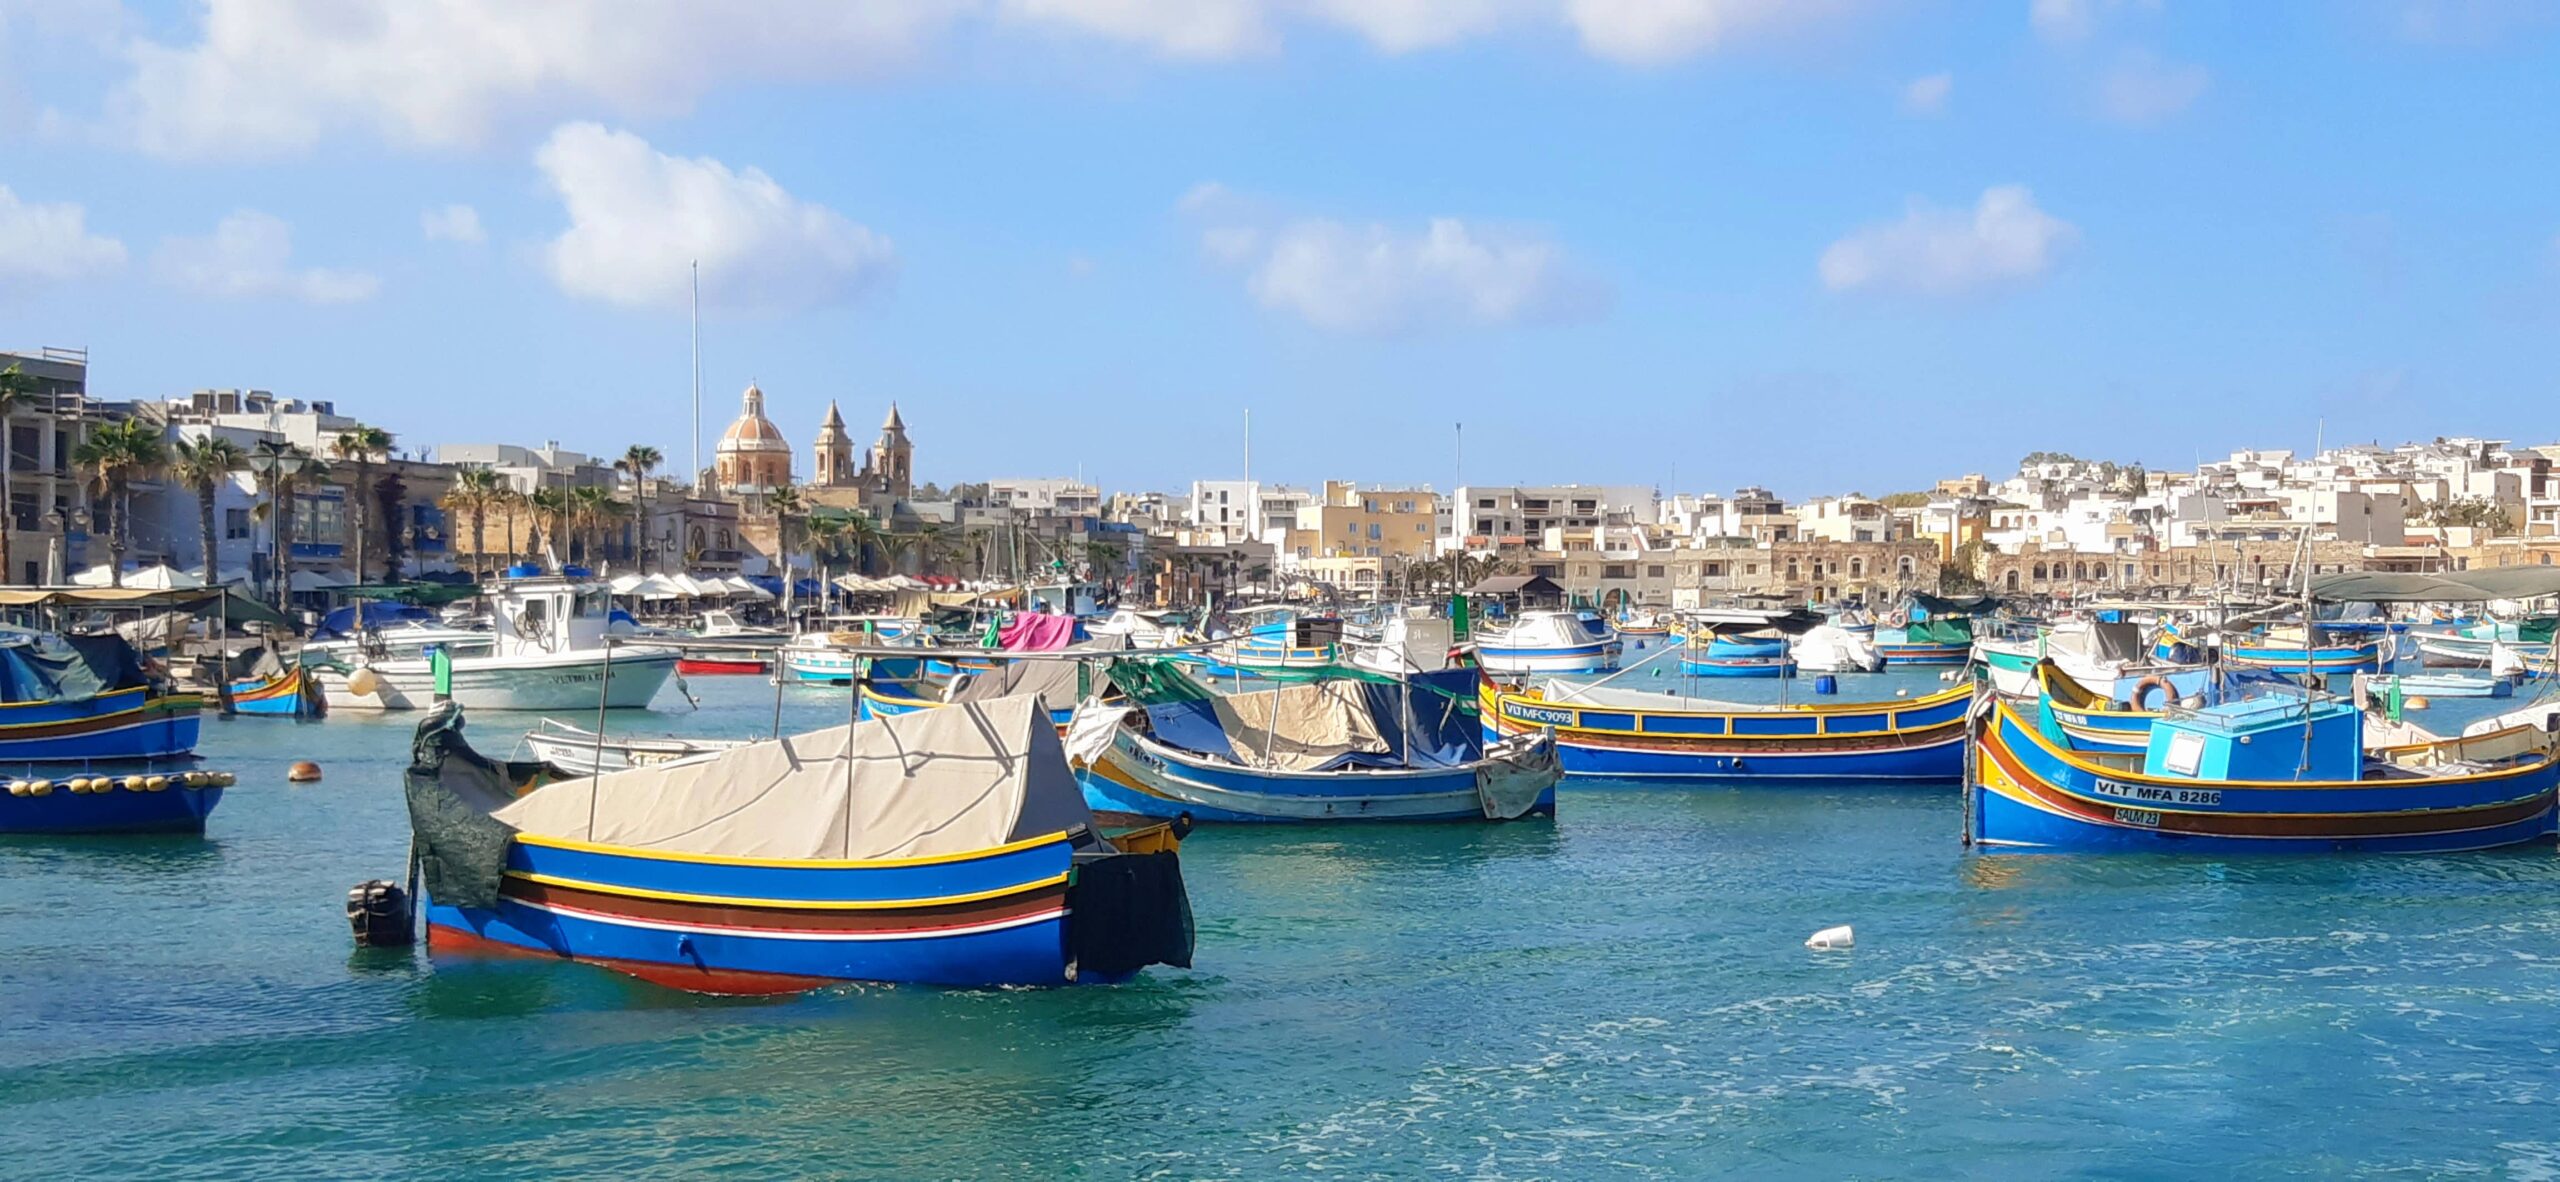 10 choses que j’aurais aimé savoir avant de vivre à Malte